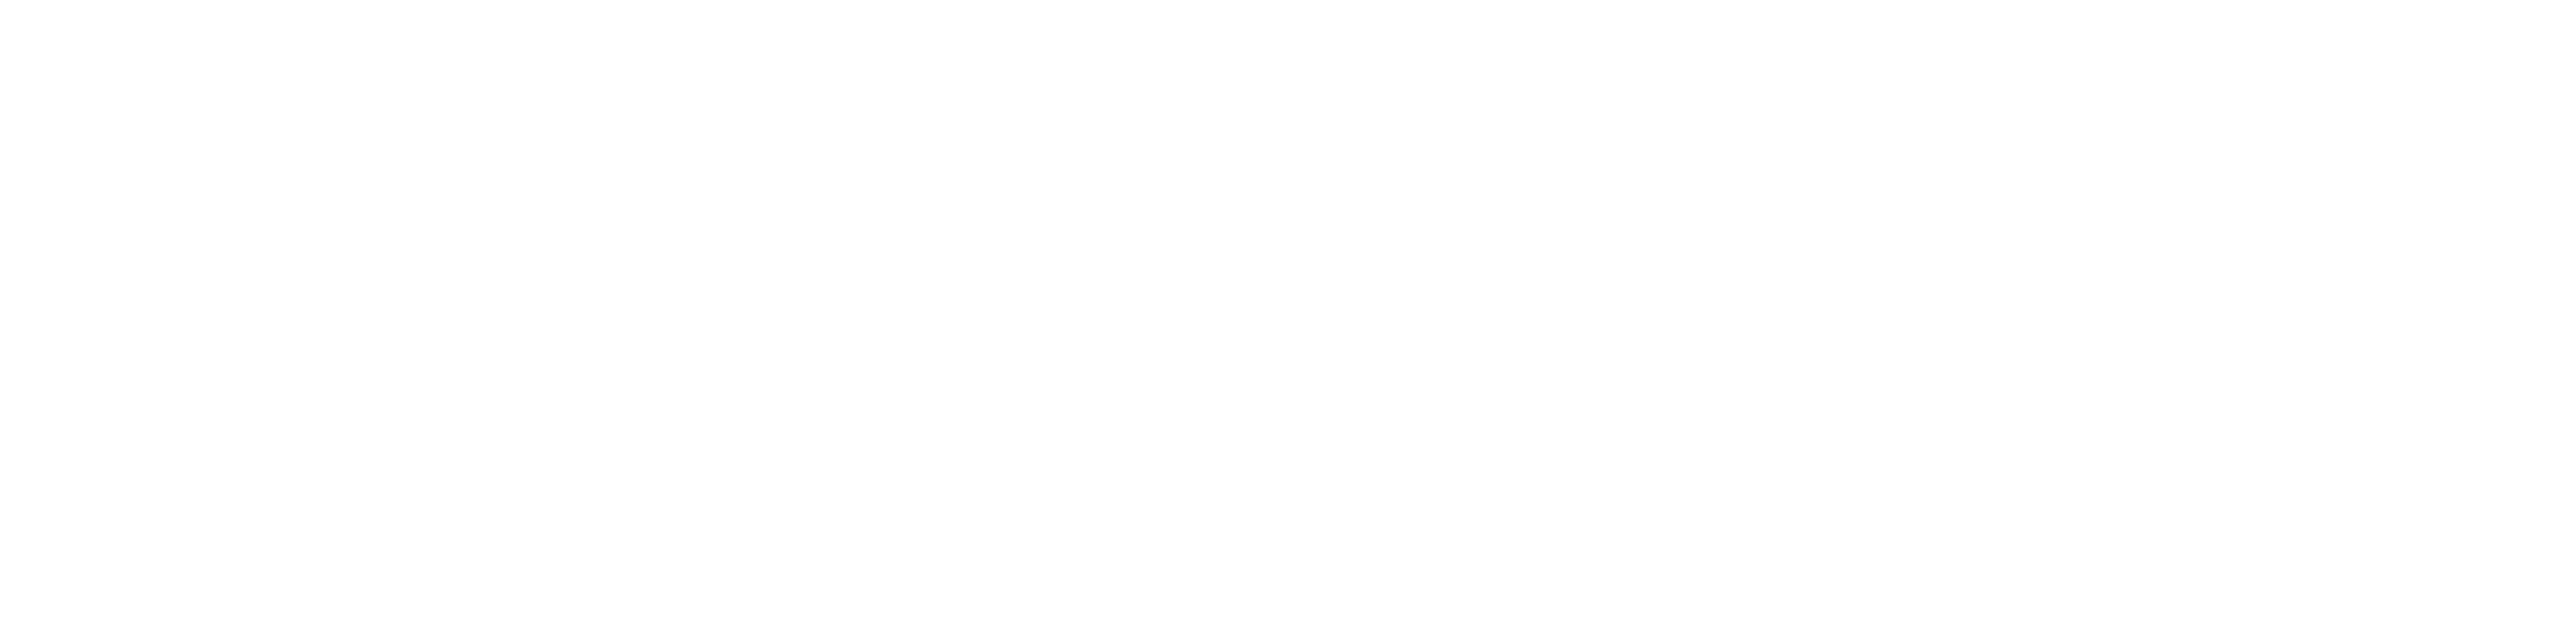 P-Fleet_Logo